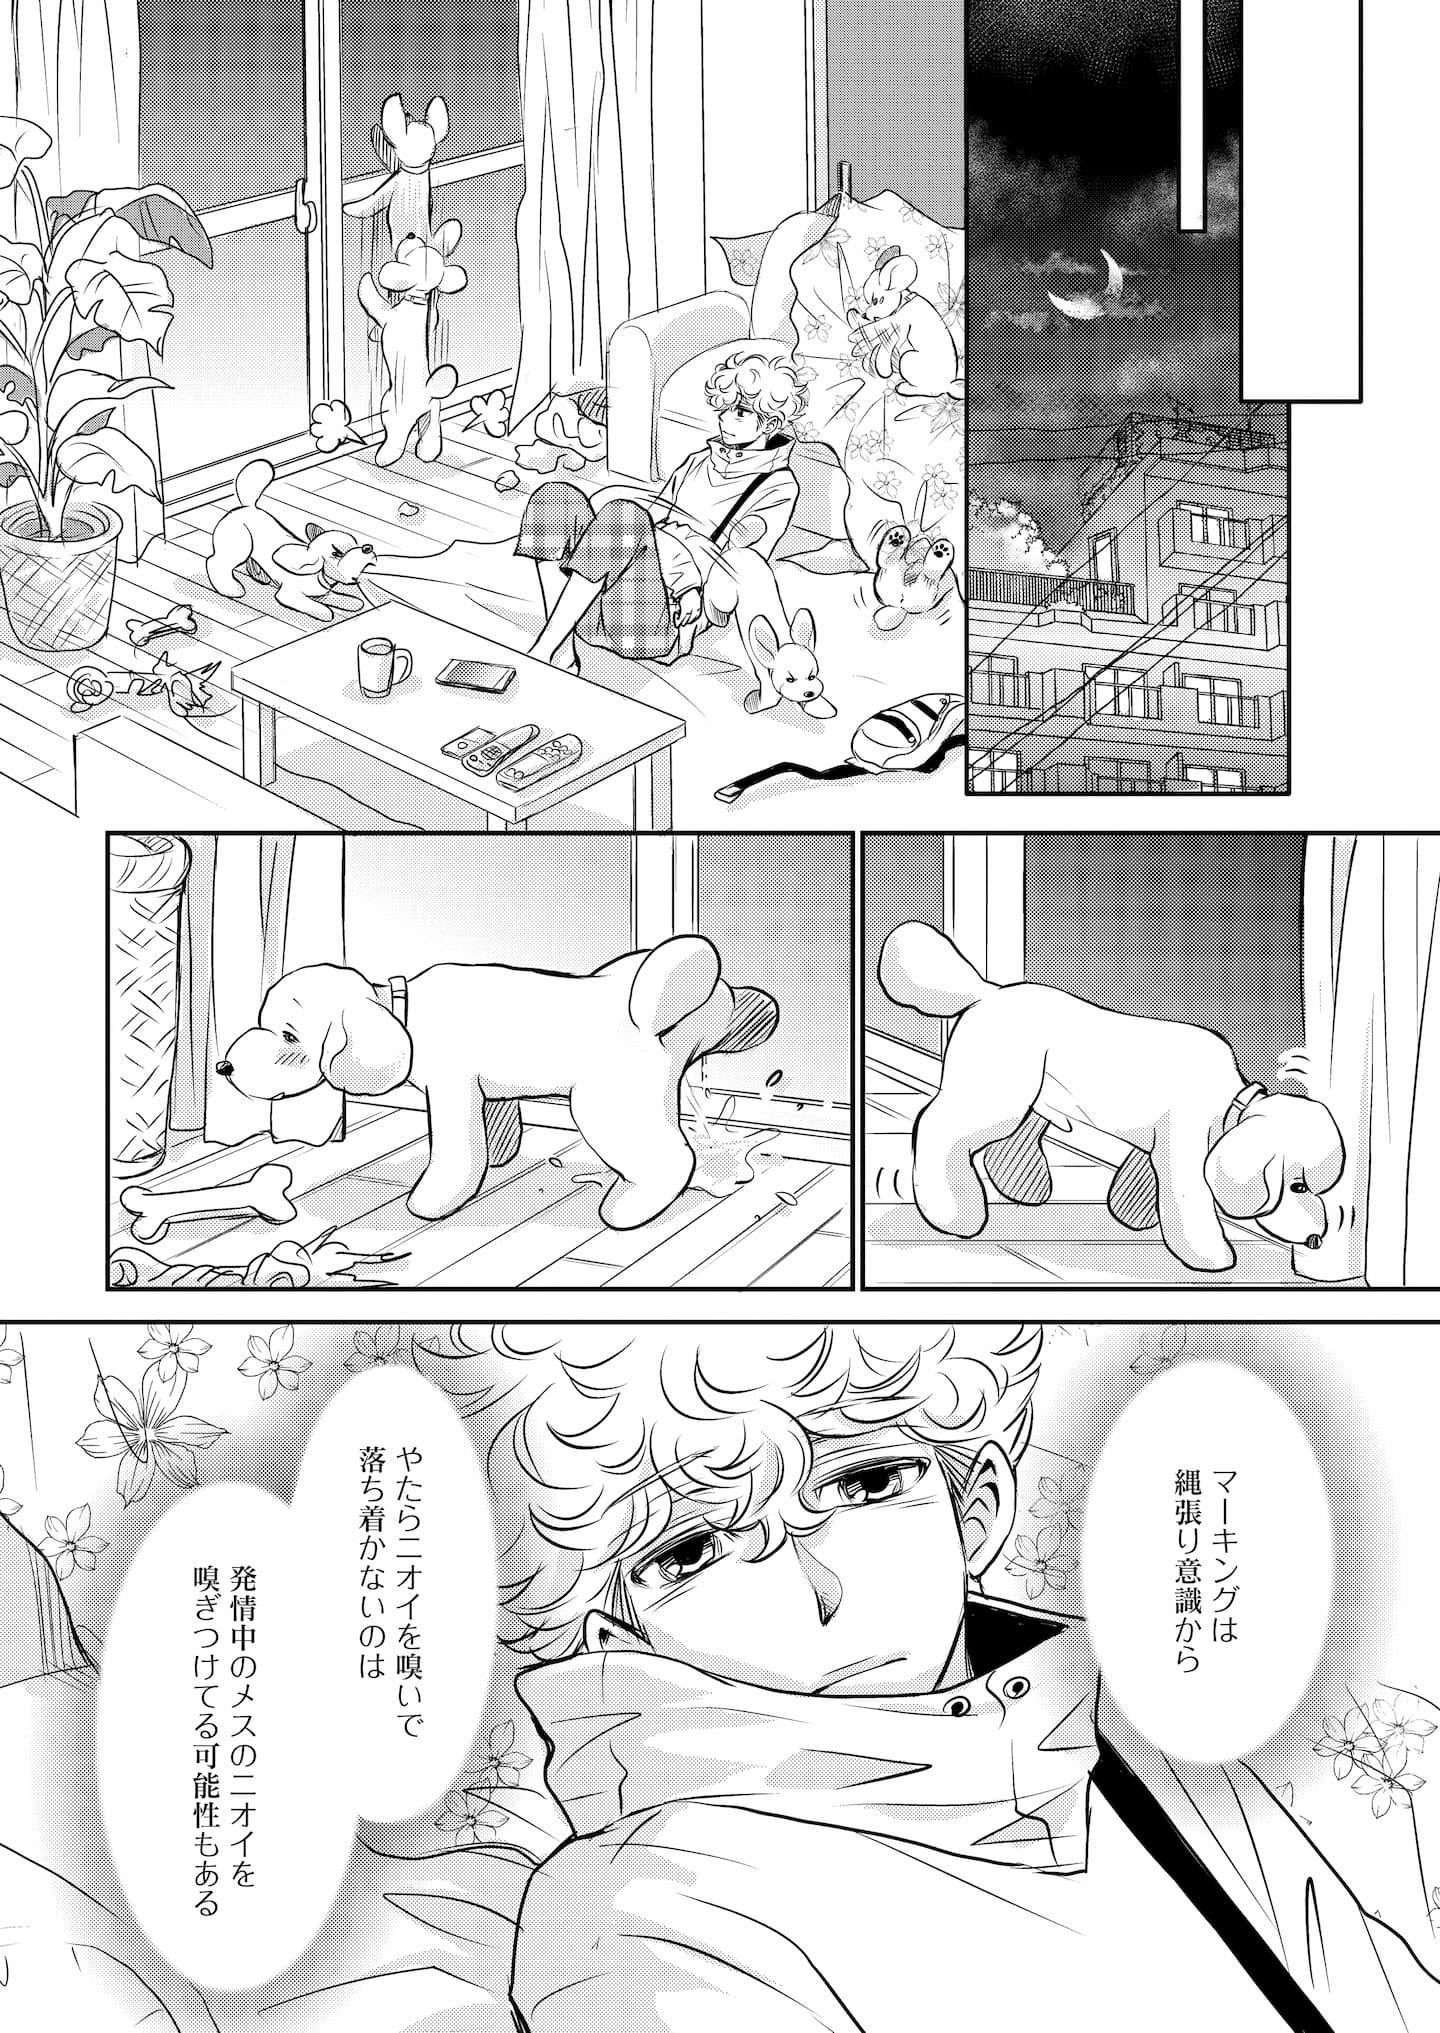 『DOG SIGNAL』6話目③　3ページ目